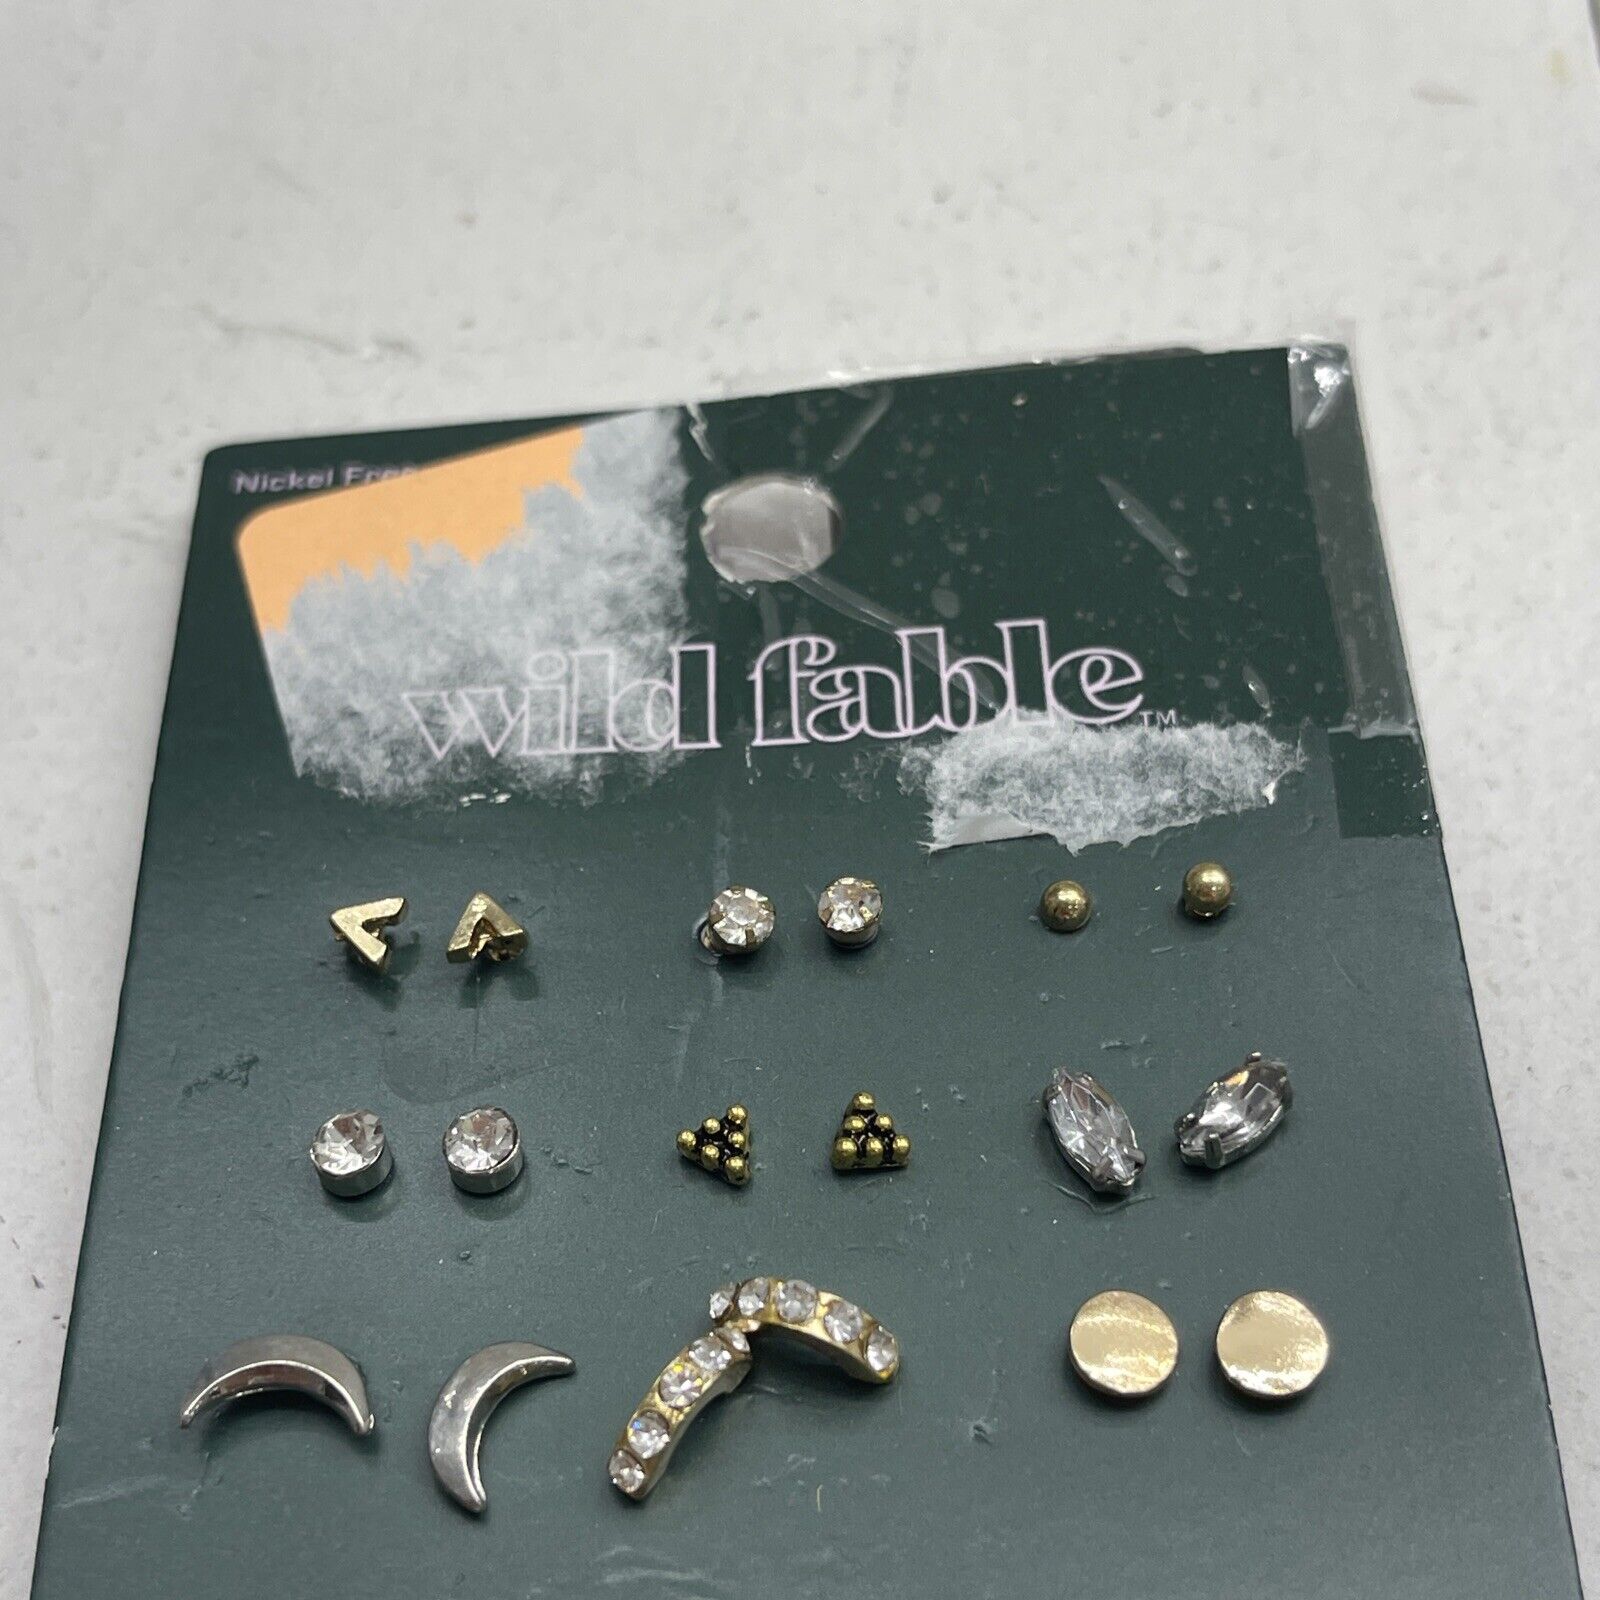 Wild Fable Nickel Free 18 Pair Stud Earrings New - beyond exchange